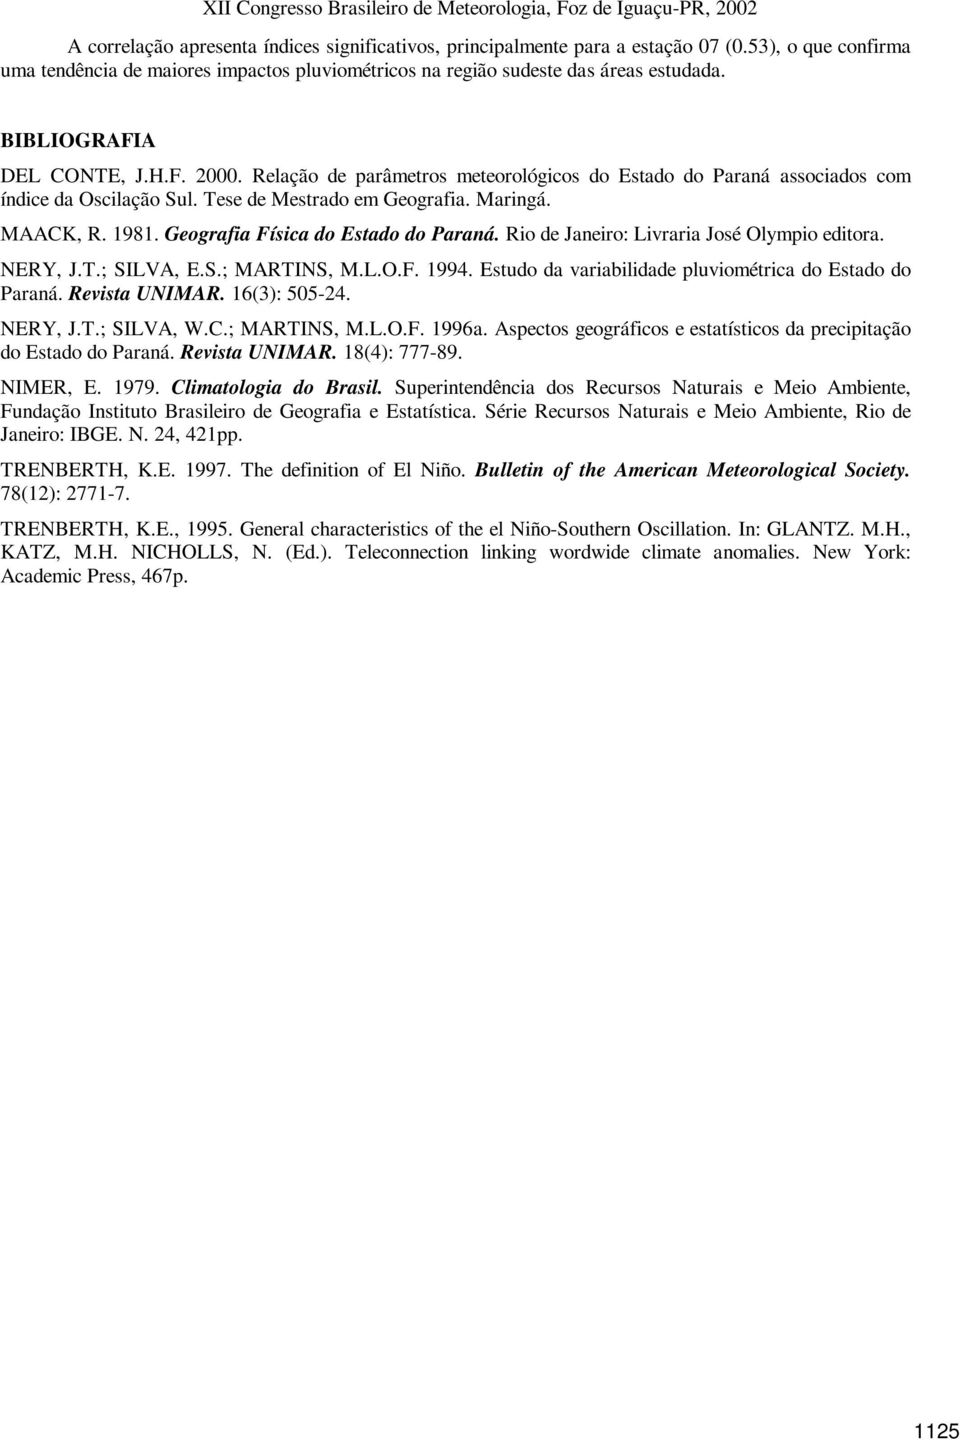 Geografia Física do Estado do Paraná. Rio de Janeiro: Livraria José Olympio editora. NERY, J.T.; SILVA, E.S.; MARTINS, M.L.O.F. 1994. Estudo da variabilidade pluviométrica do Estado do Paraná.